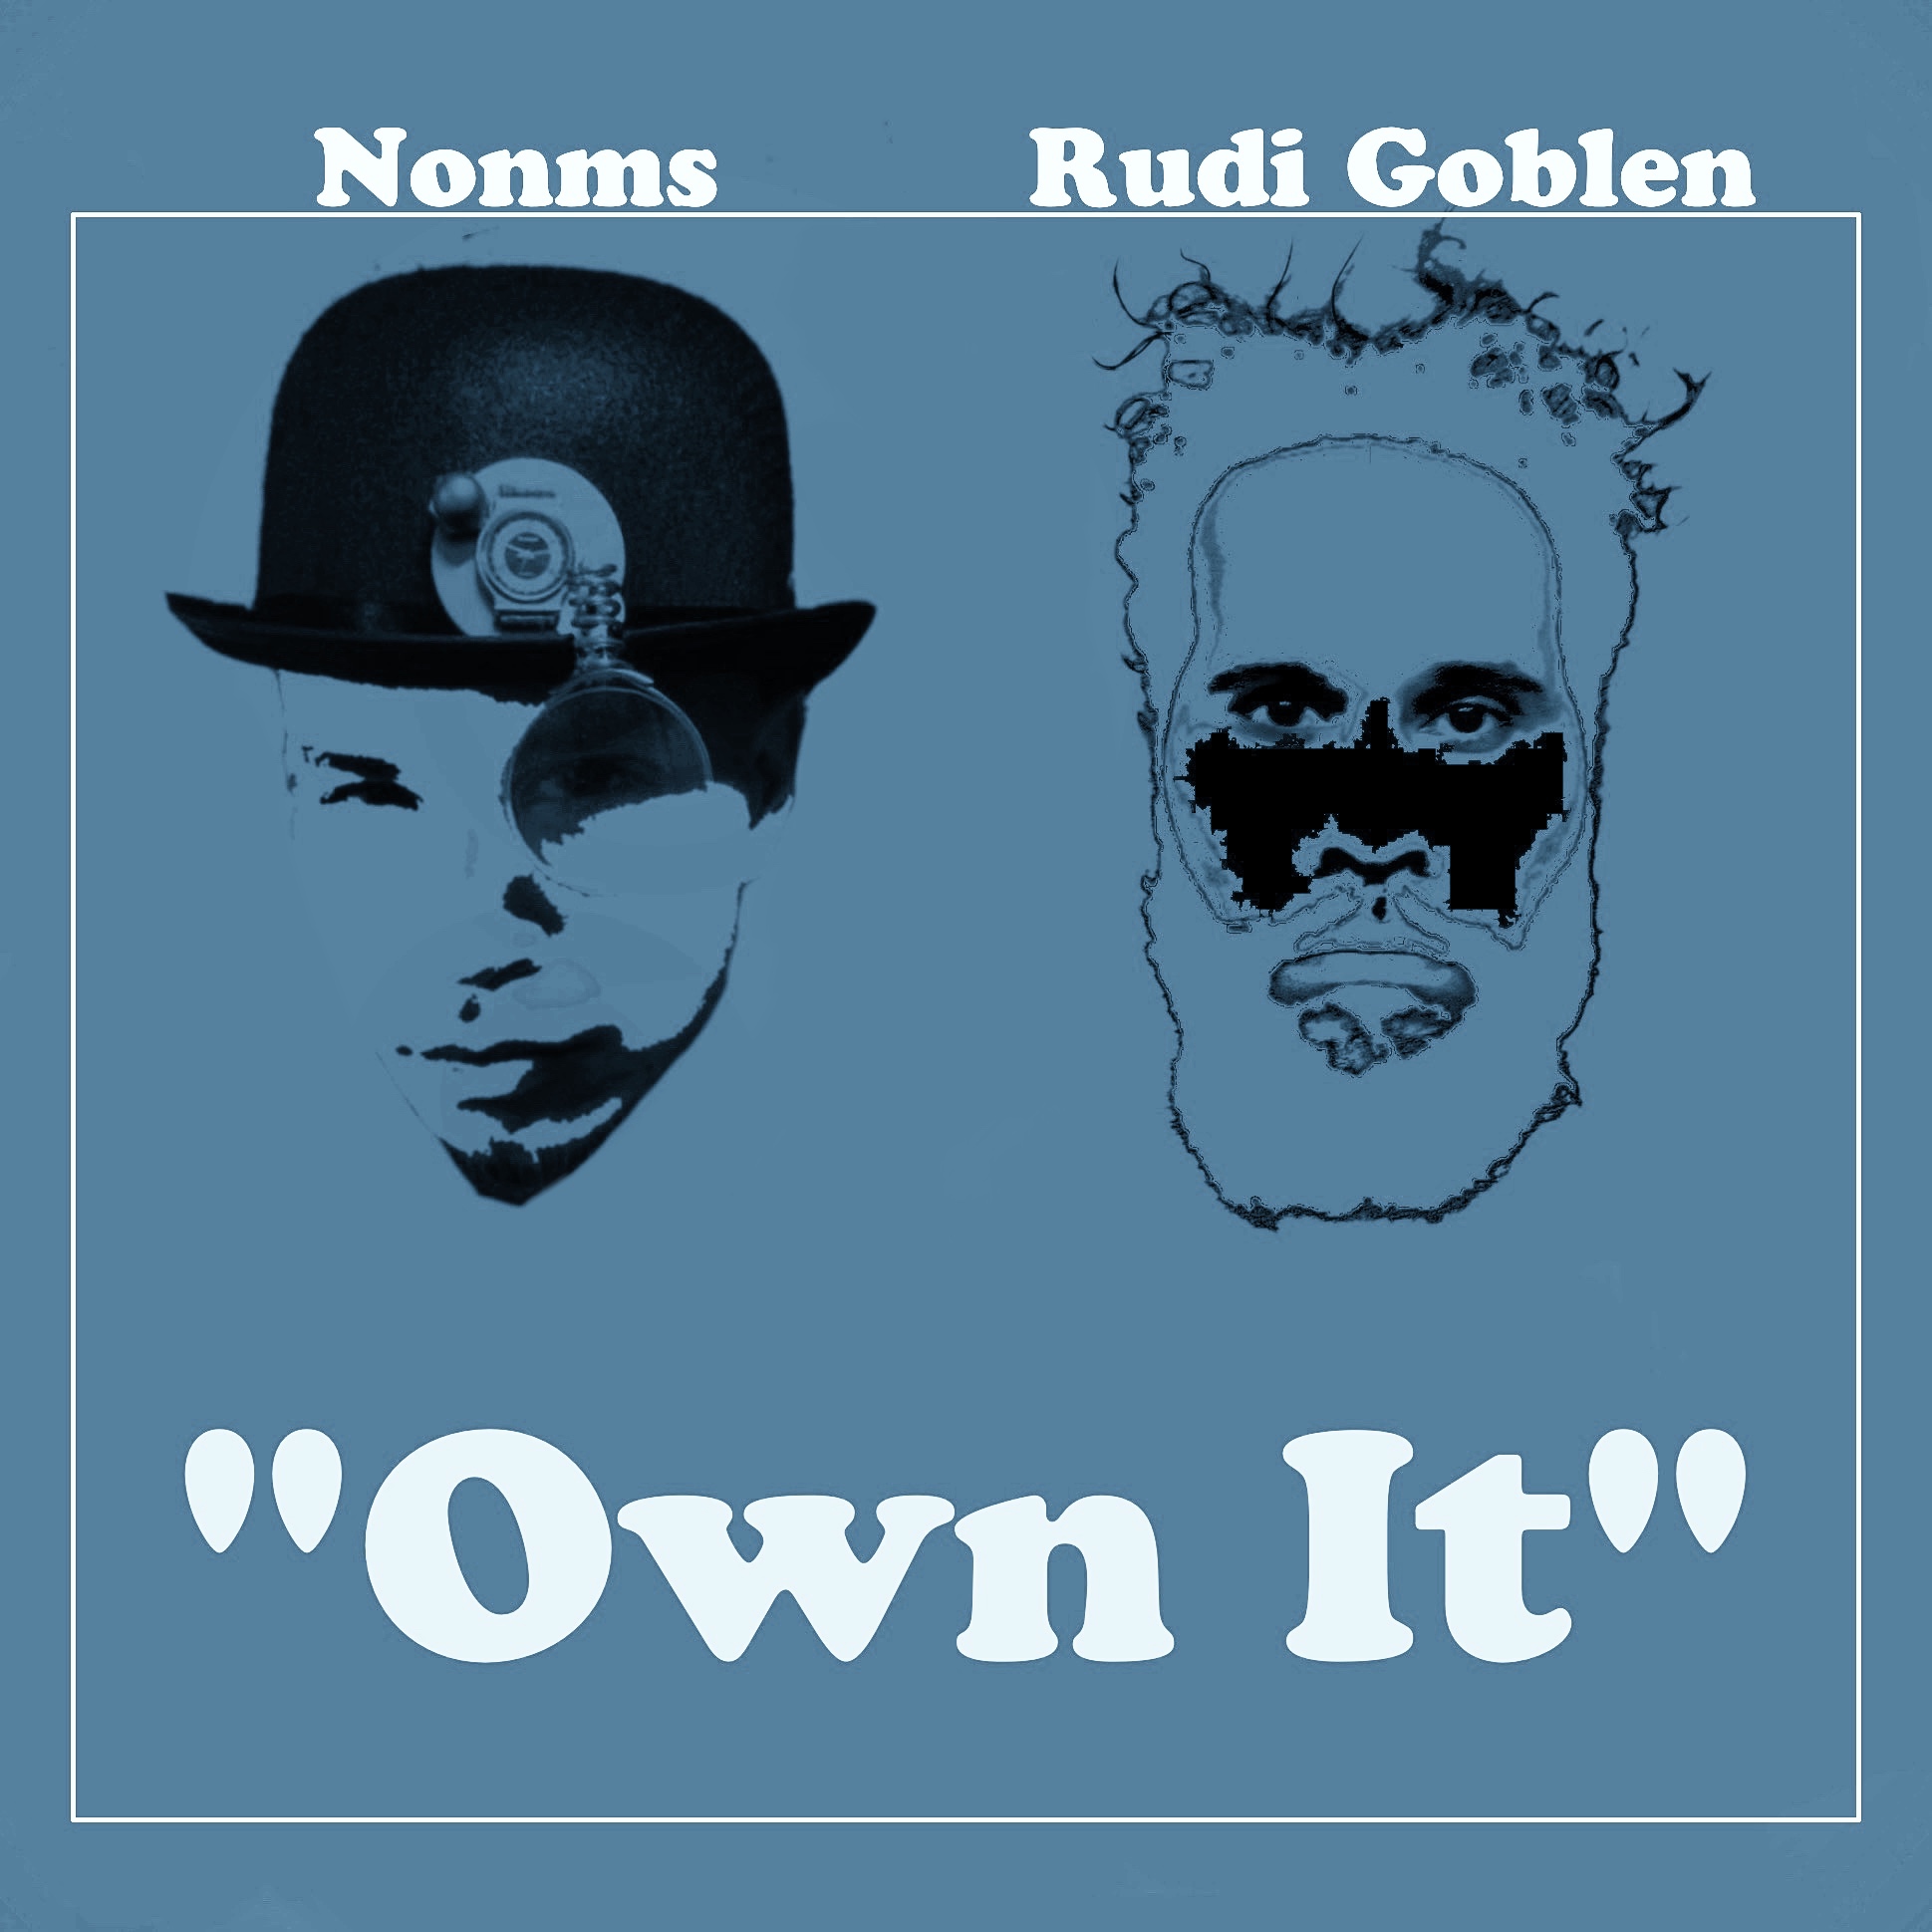 ਡਾਉਨਲੋਡ ਕਰੋ Nonms & Rudi Goblen - "Own It"